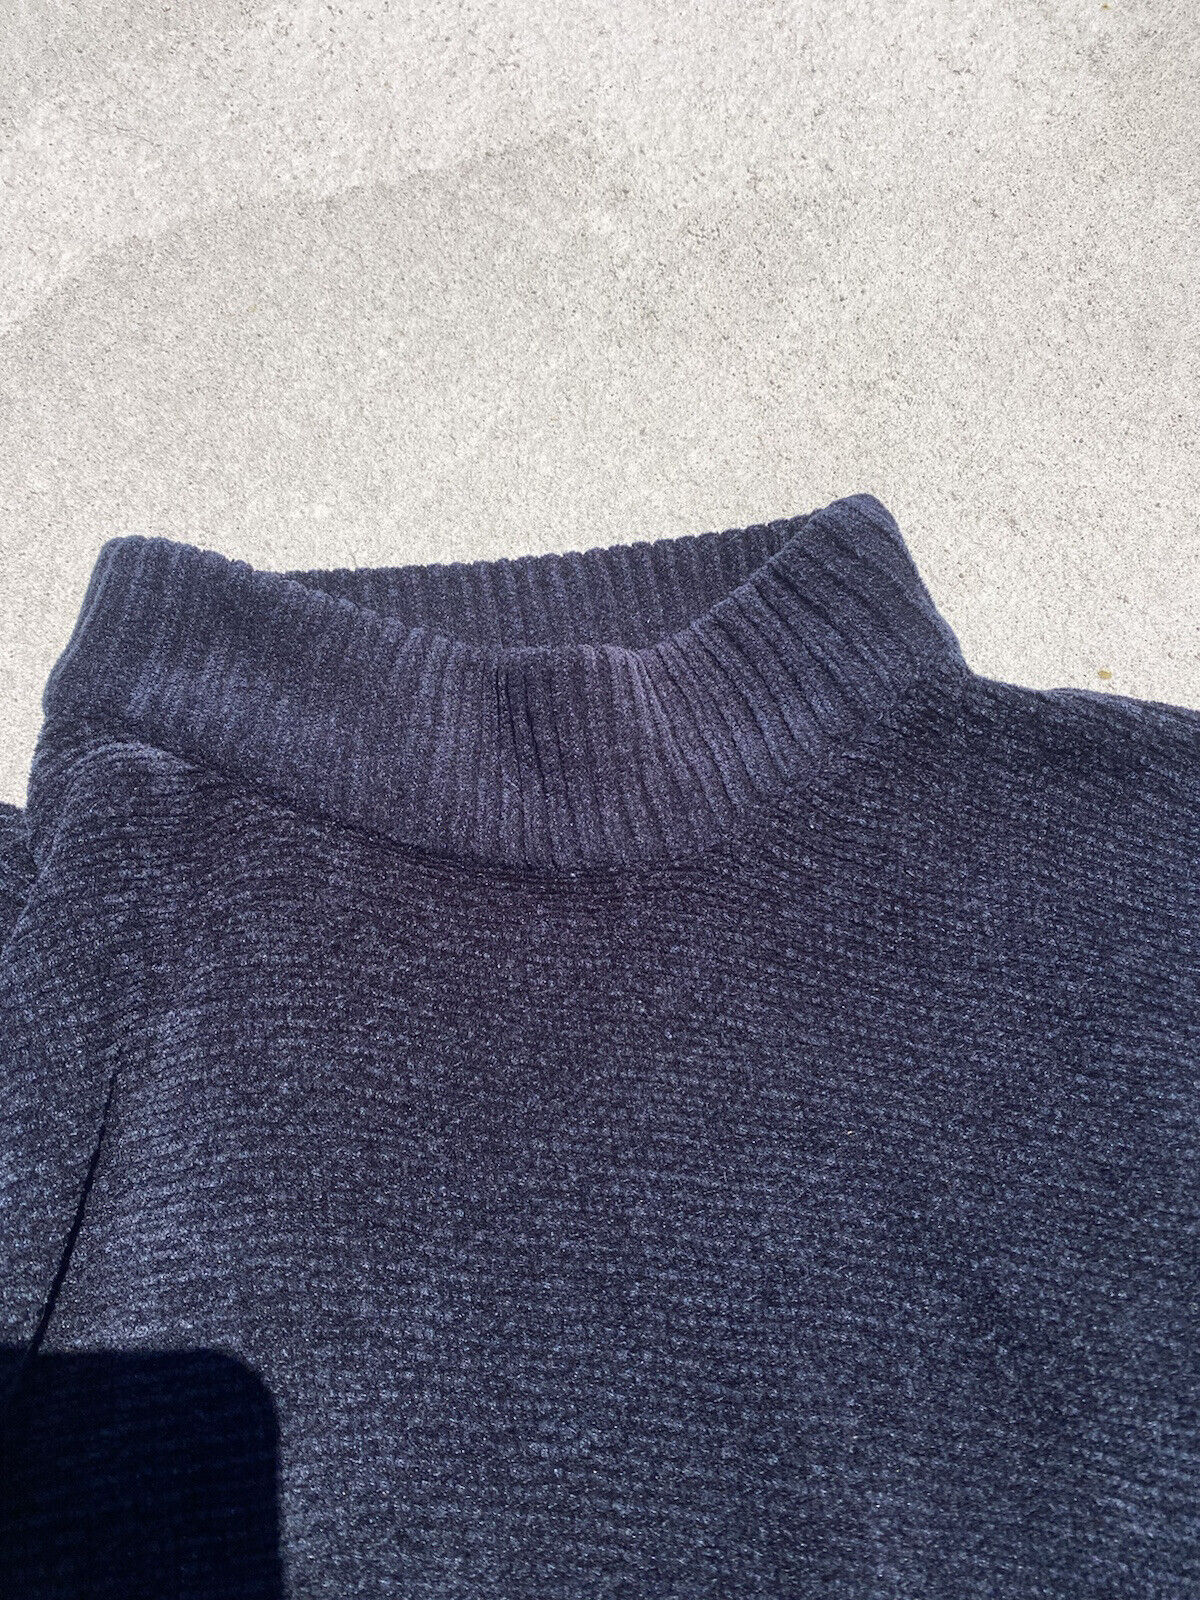 Black Velour Mock Neck Sweater - Unbranded - Women’s Medium